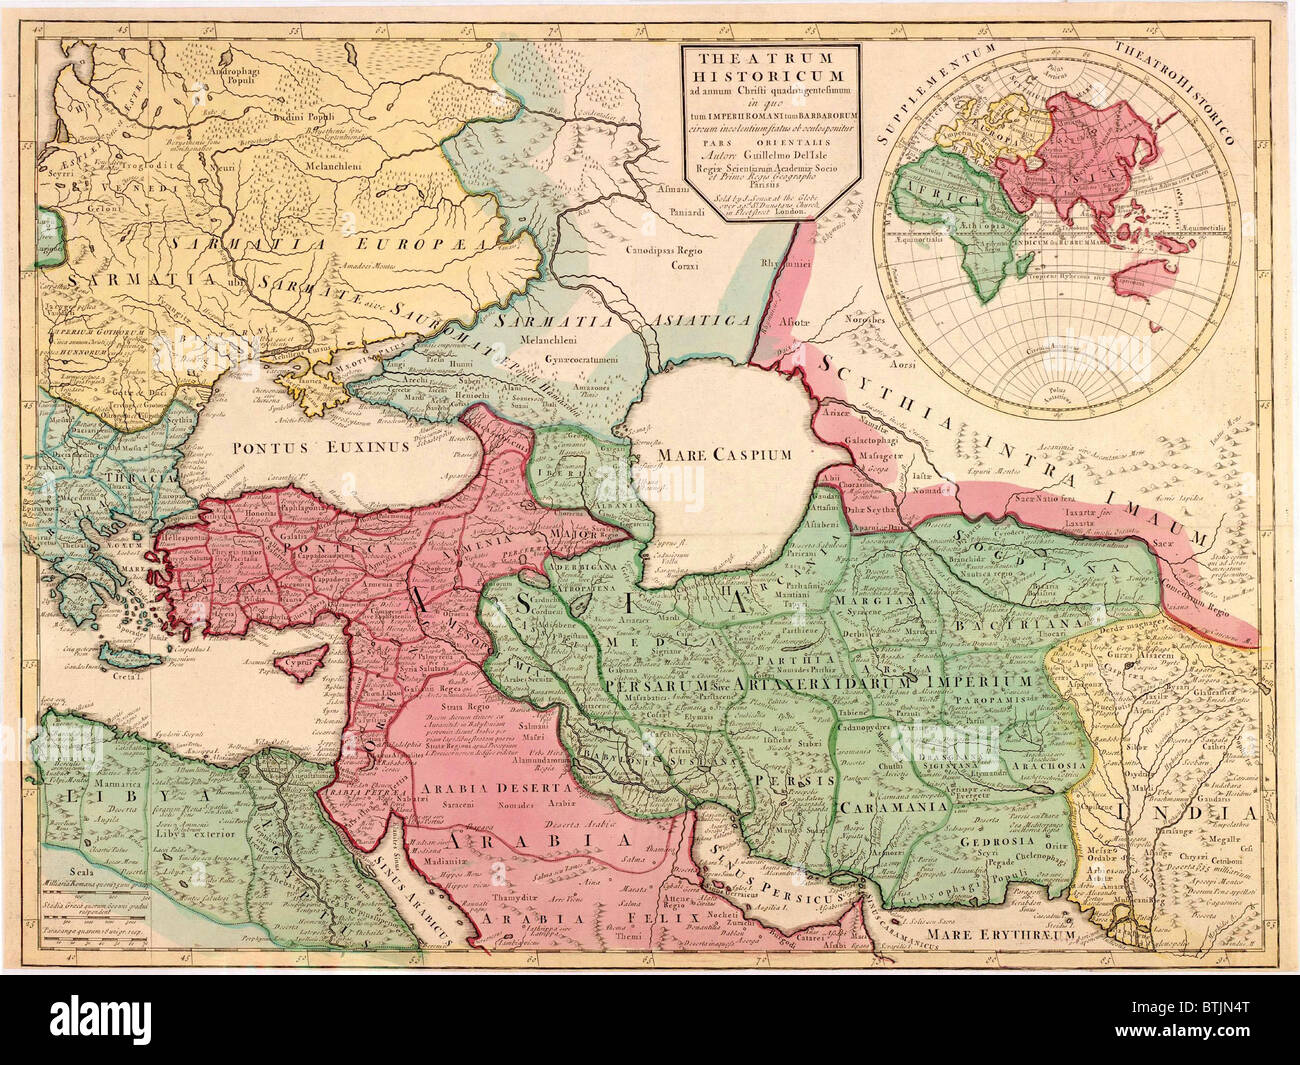 1712 Francese Mappa di Asia sud-ovest e sud-est Europa ricreando la geografia del tardo impero romano del 400 D.C. Mappa usa latin nomi di luogo Foto Stock